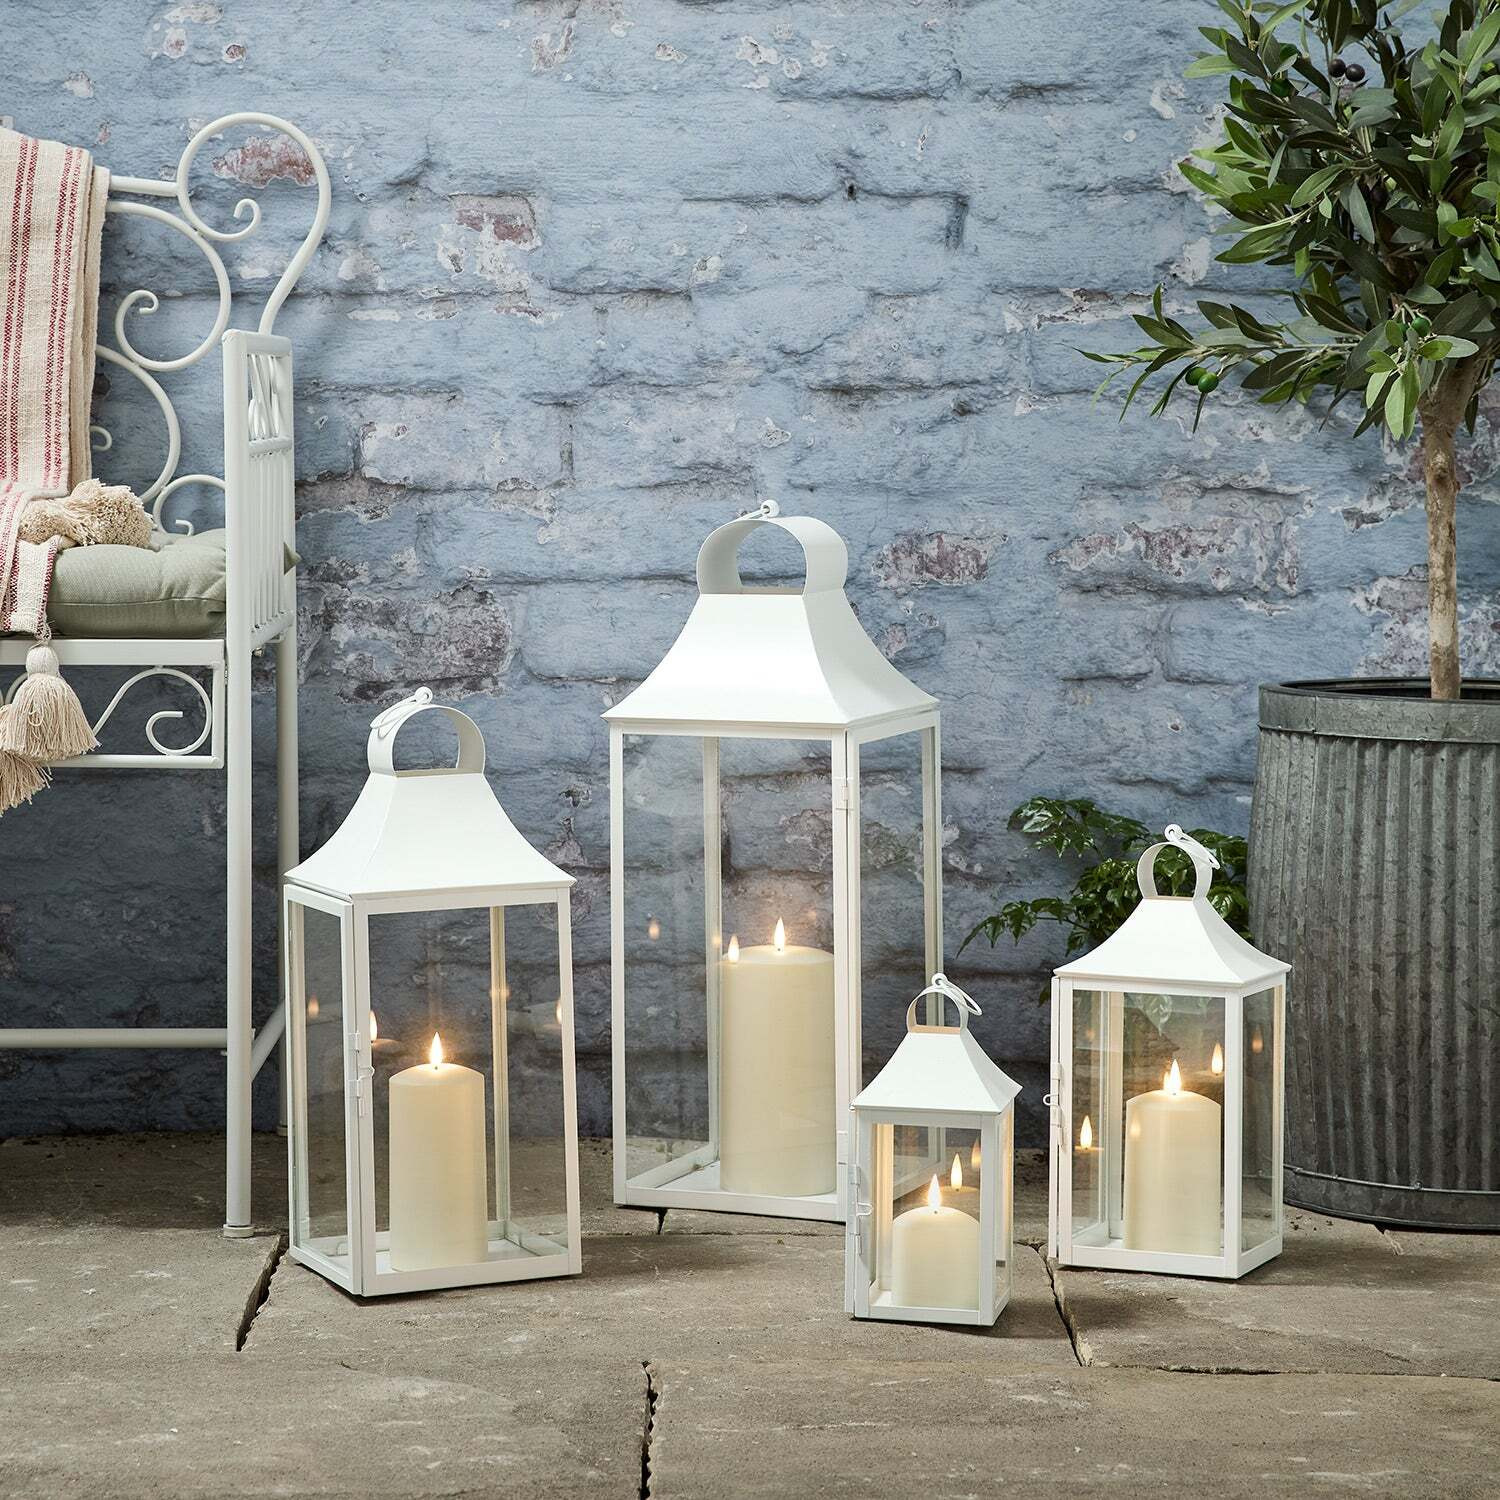 Set of 4 Albury White Garden Lanterns with TruGlow® Candles - image 1